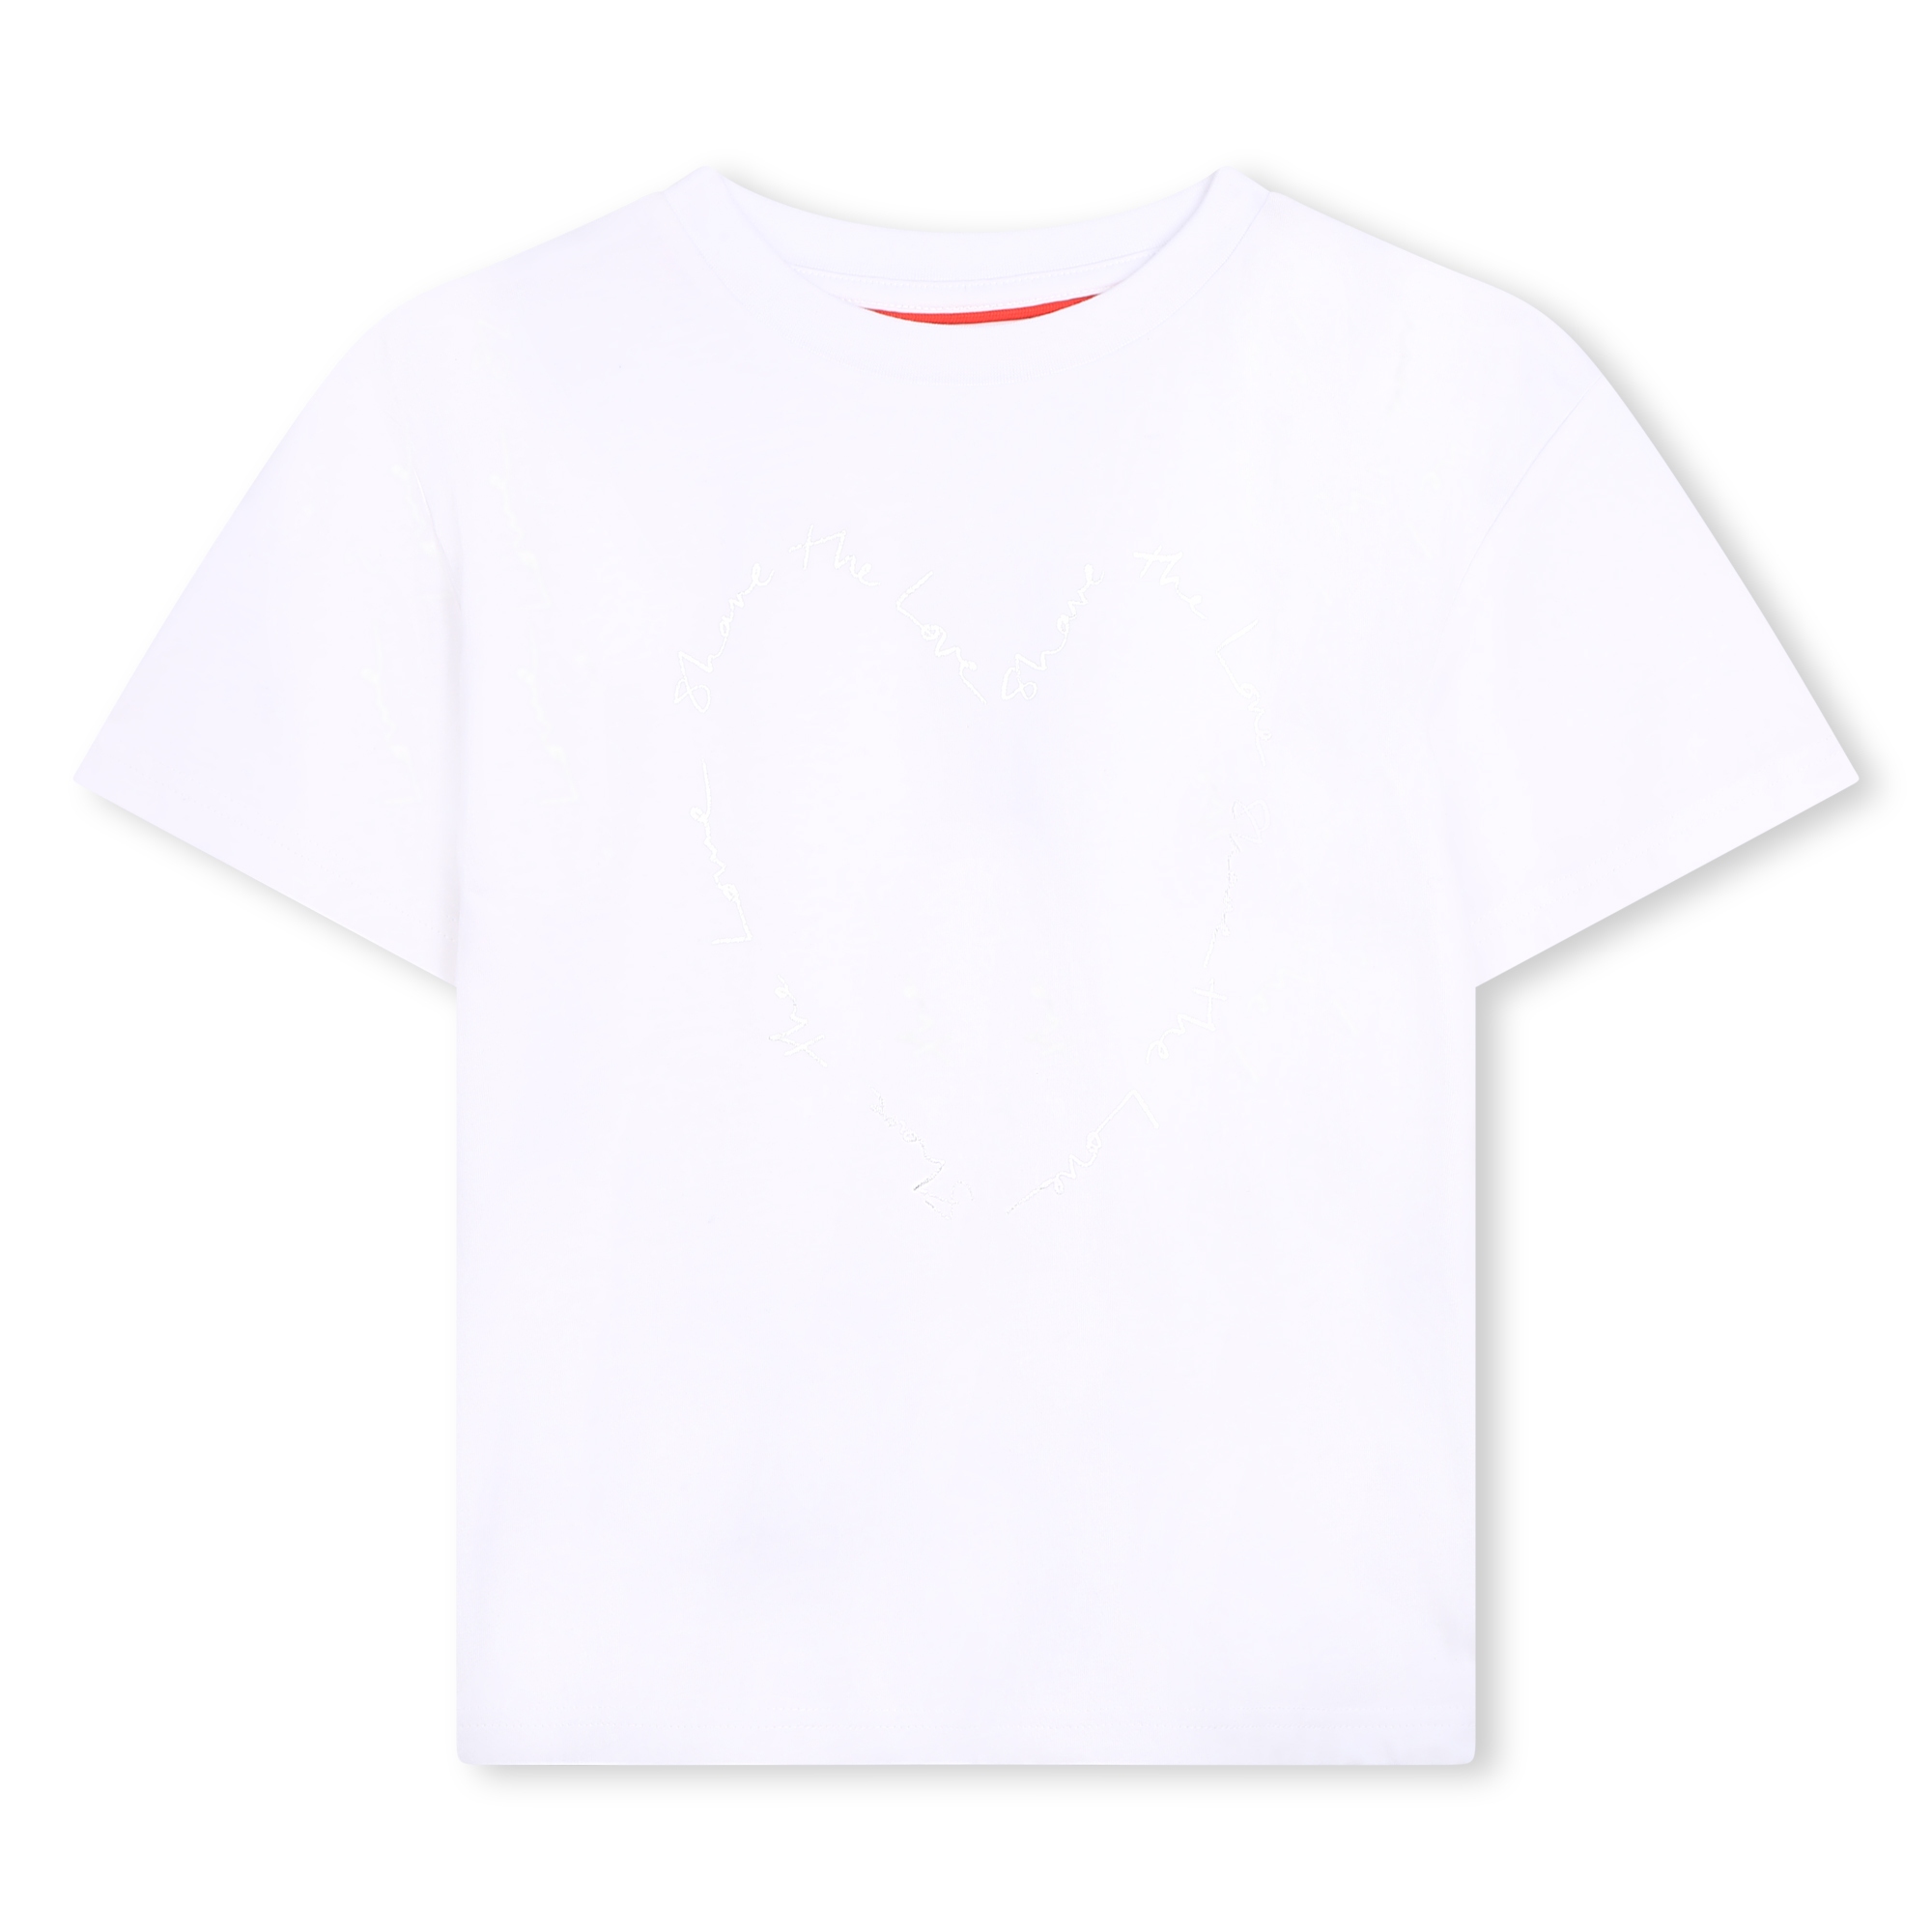 T-shirt met hartjes-print HUGO Voor